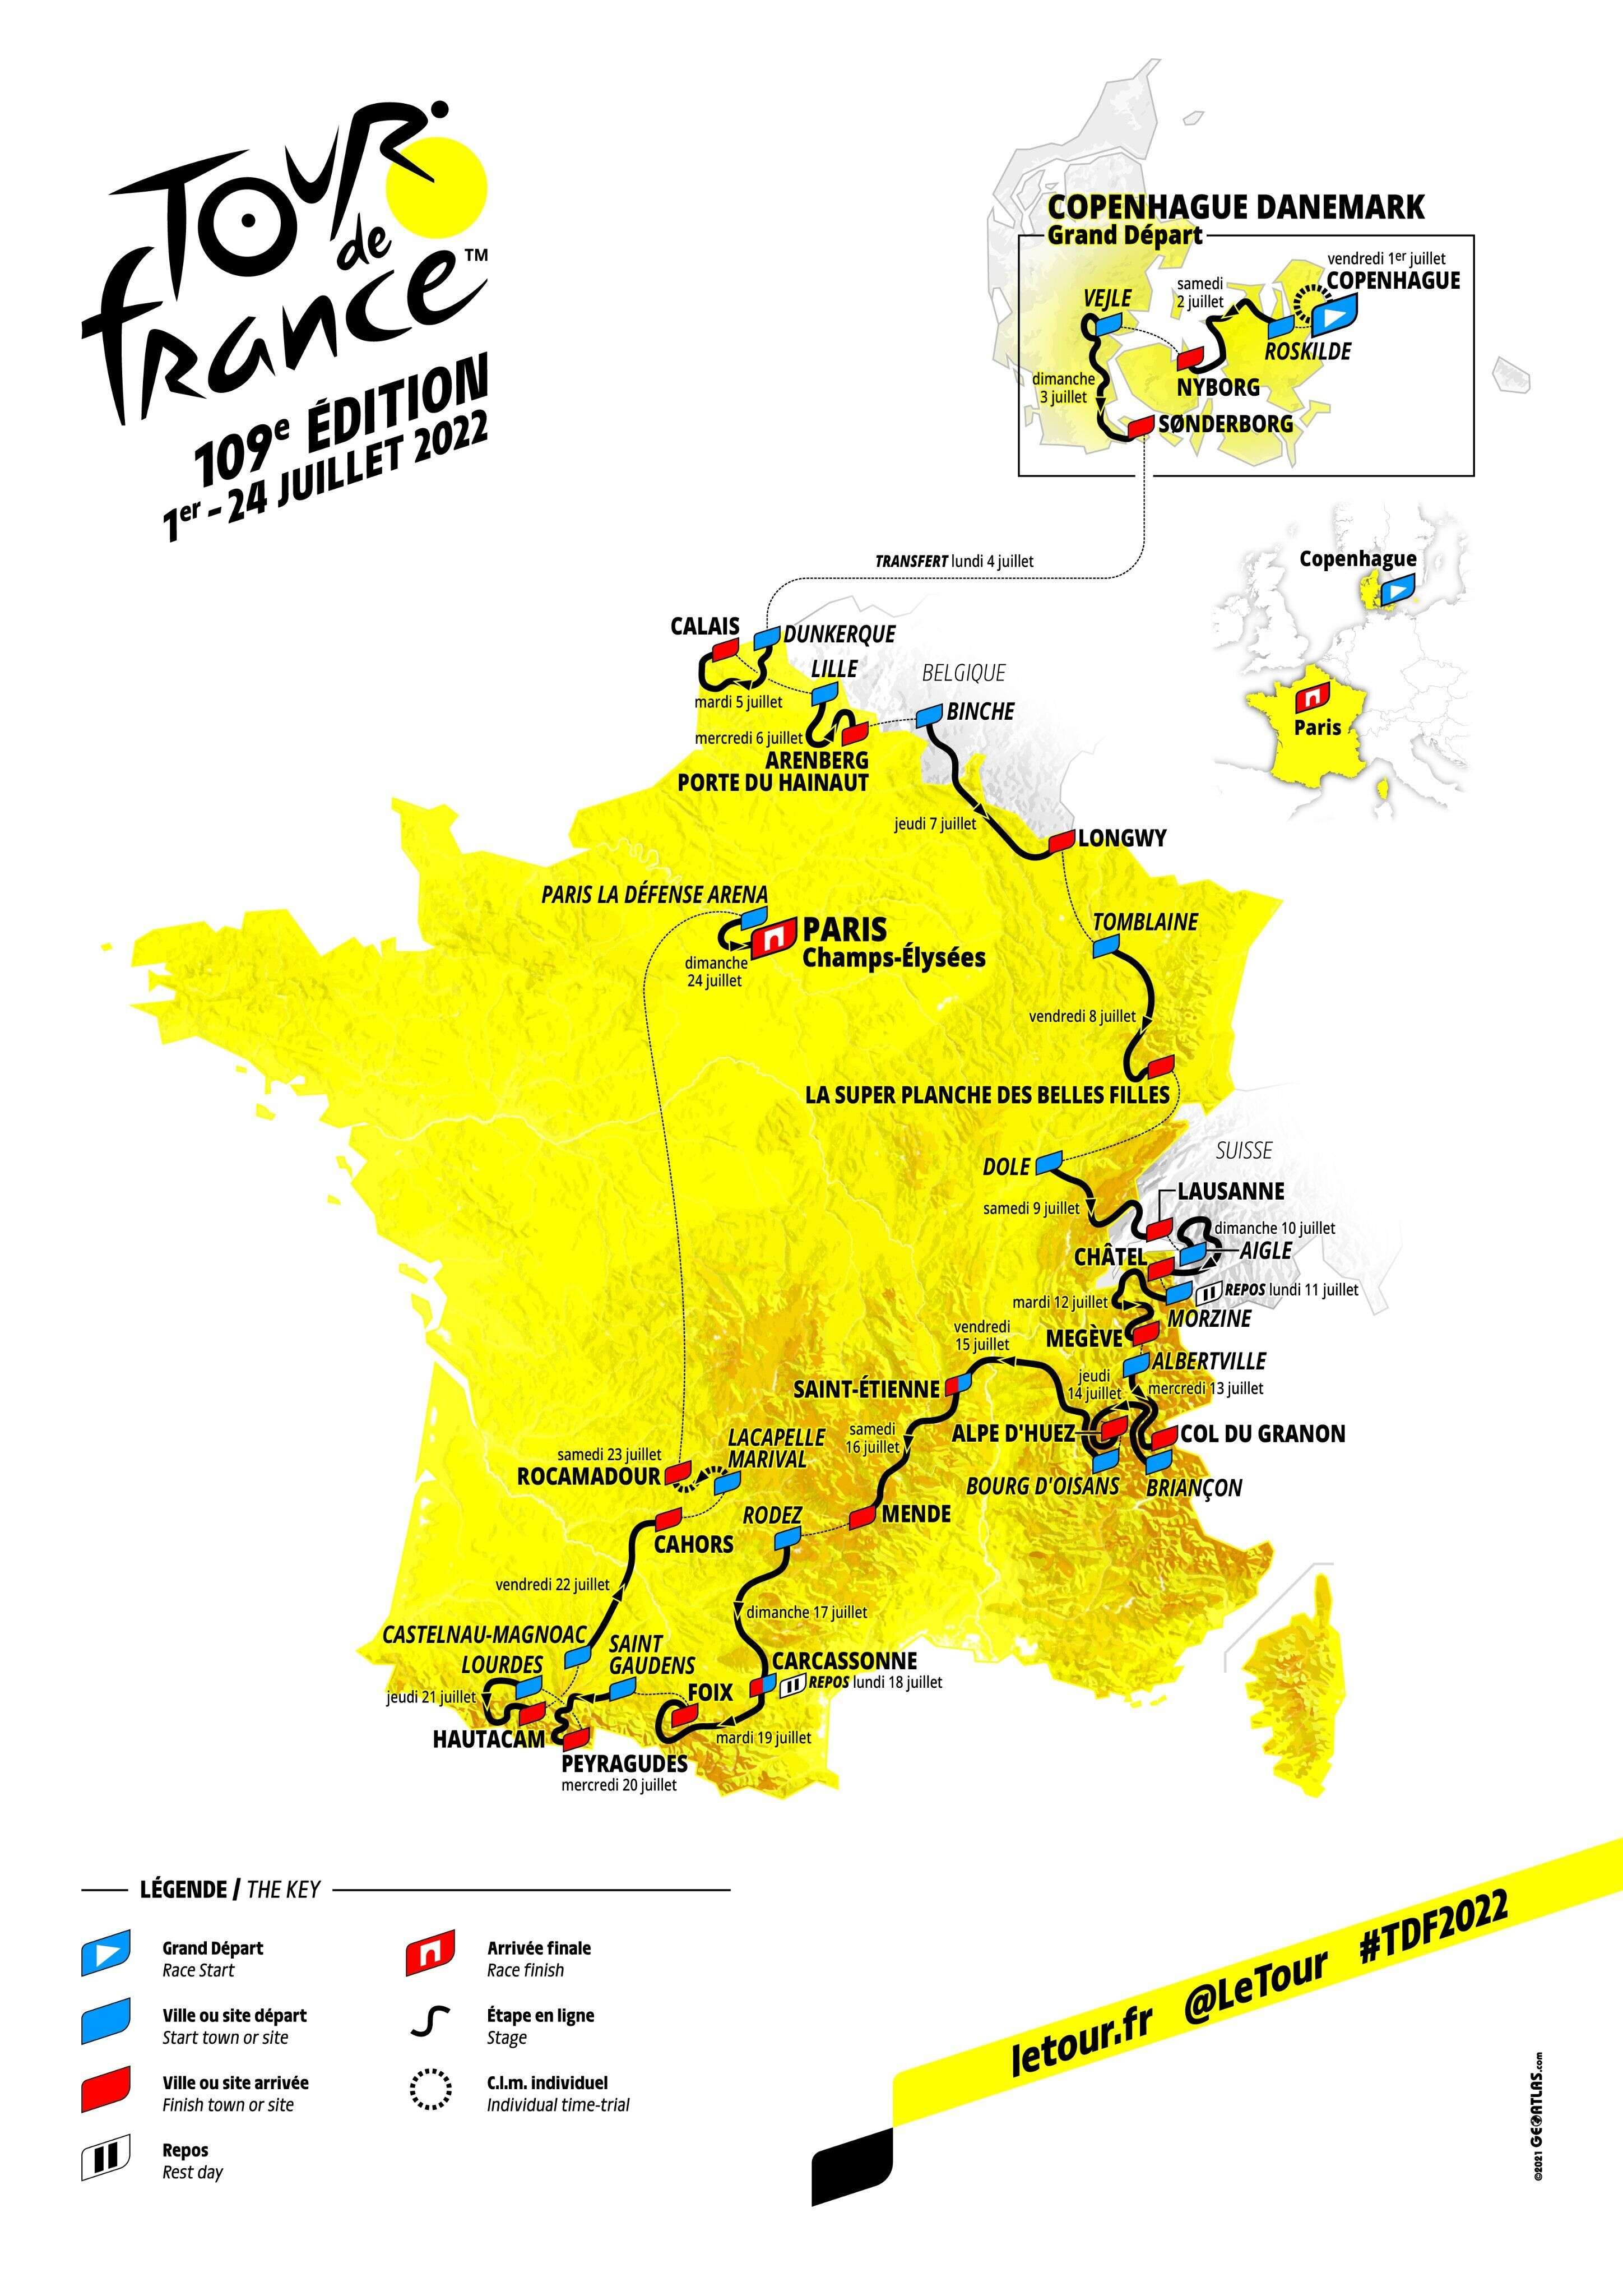 Ce jeudi 14 octobre, le parcours du Tour de France 2022 a été présenté officiellement par ASO. Le départ en sera donné le 1er juillet prochain de Copenhague, au Danemark.